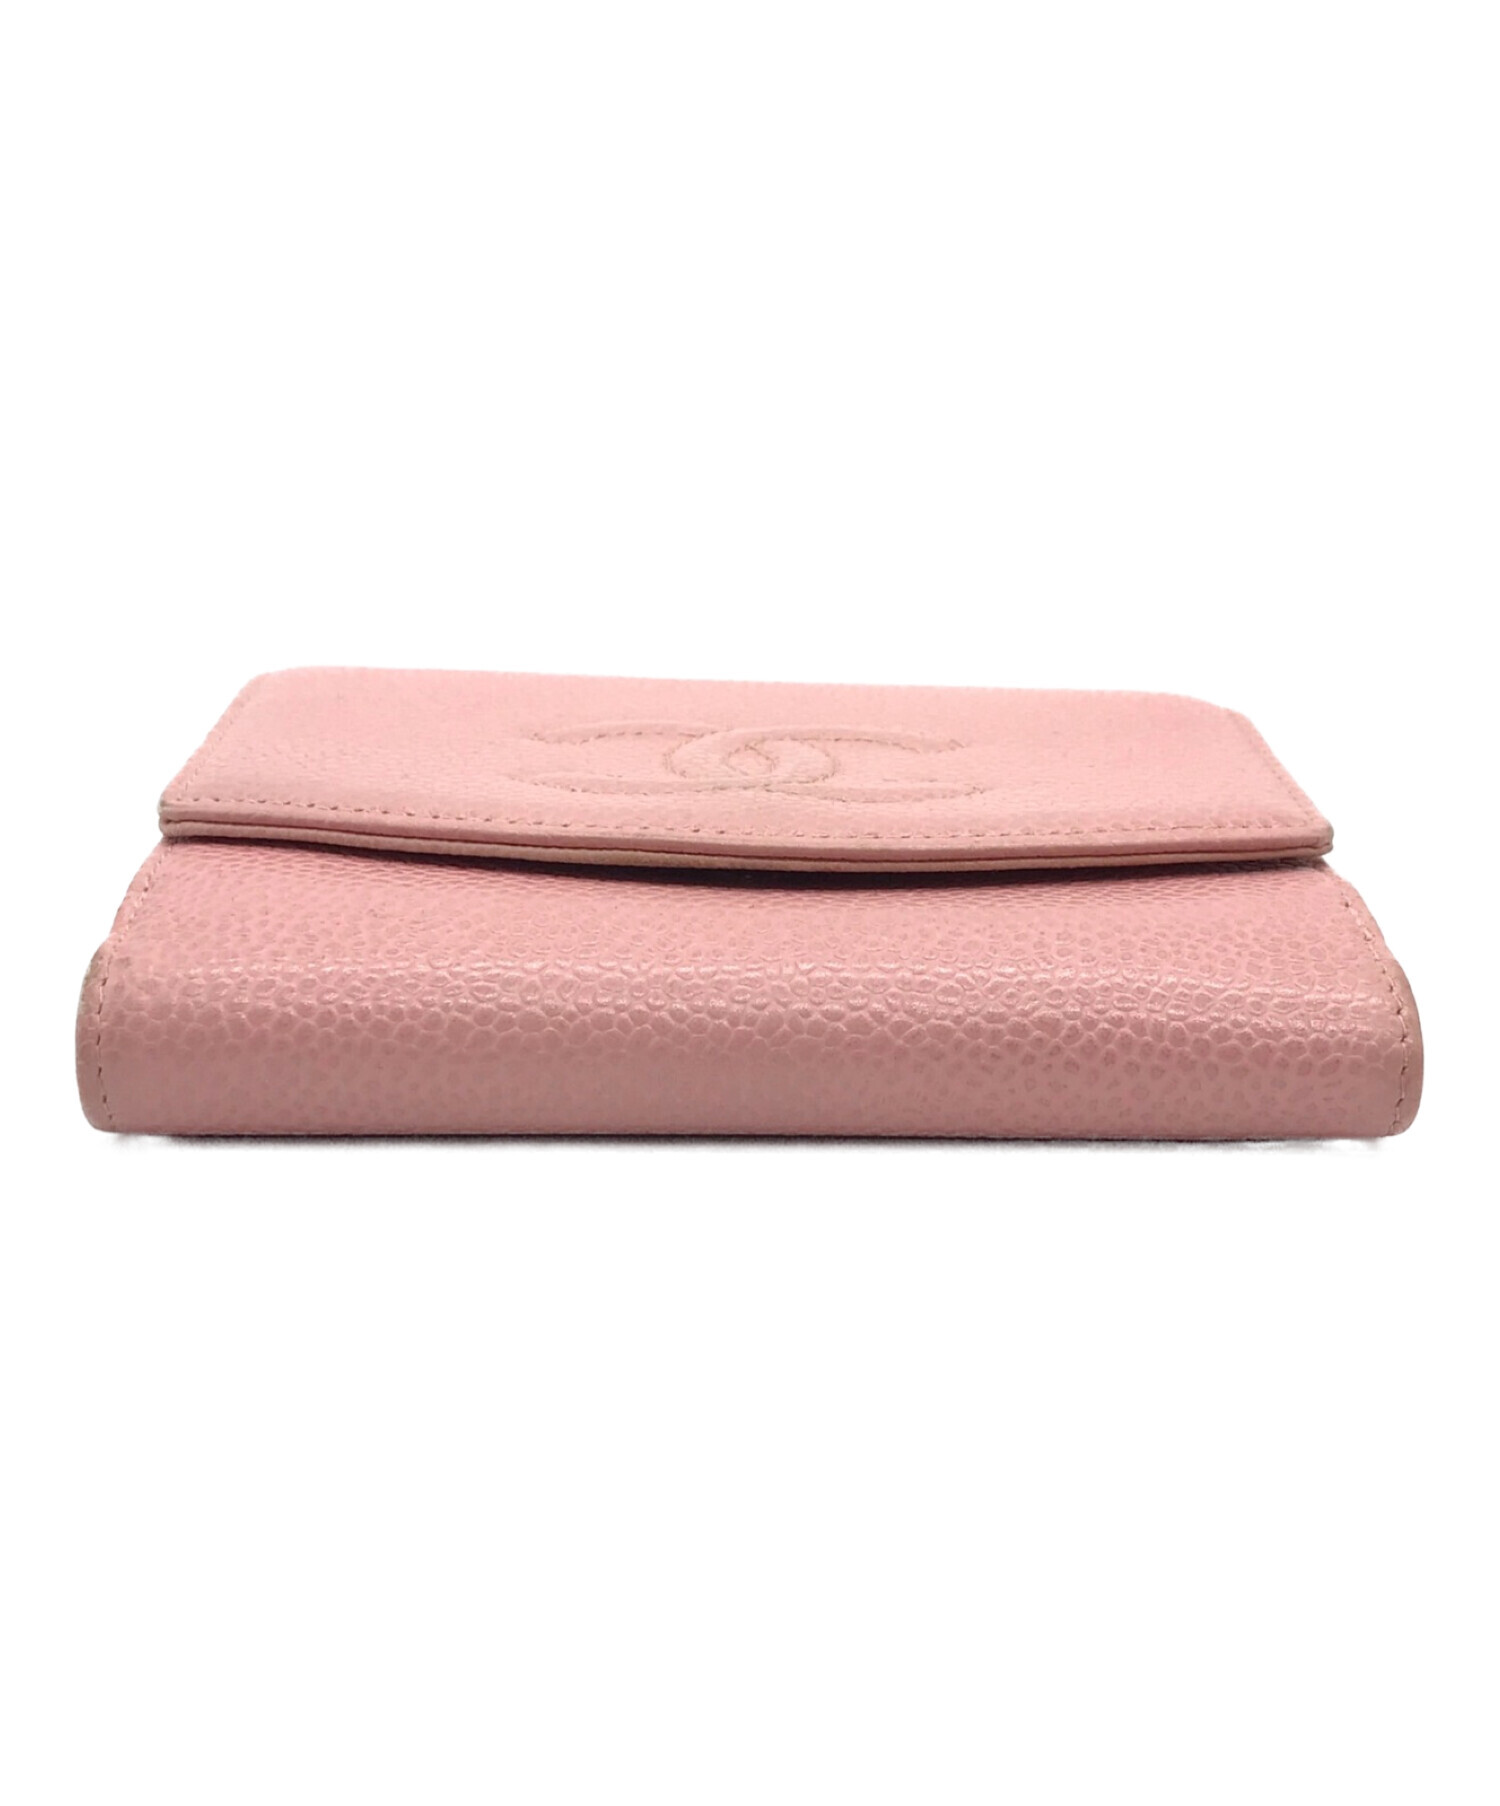 ◆売約済◆【美品】CHANEL シャネル キャビアスキン 二つ折り財布 ピンク